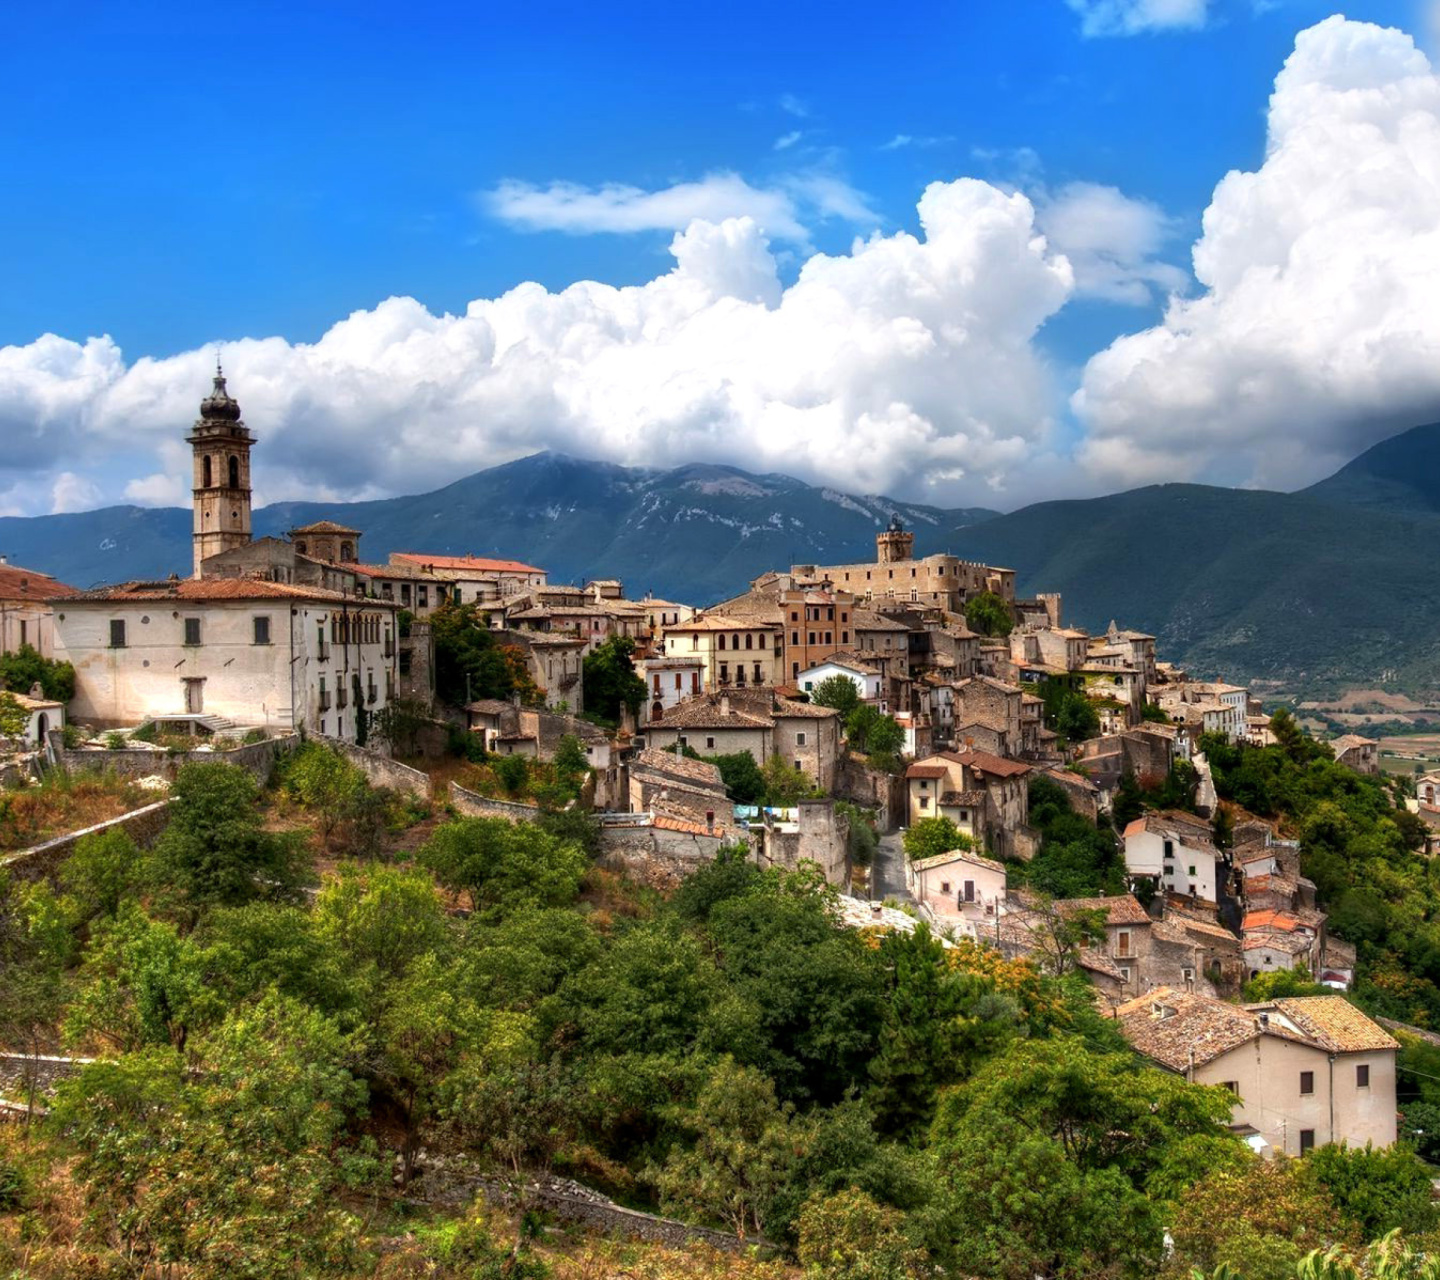 Capestrano Comune in Abruzzo screenshot #1 1440x1280